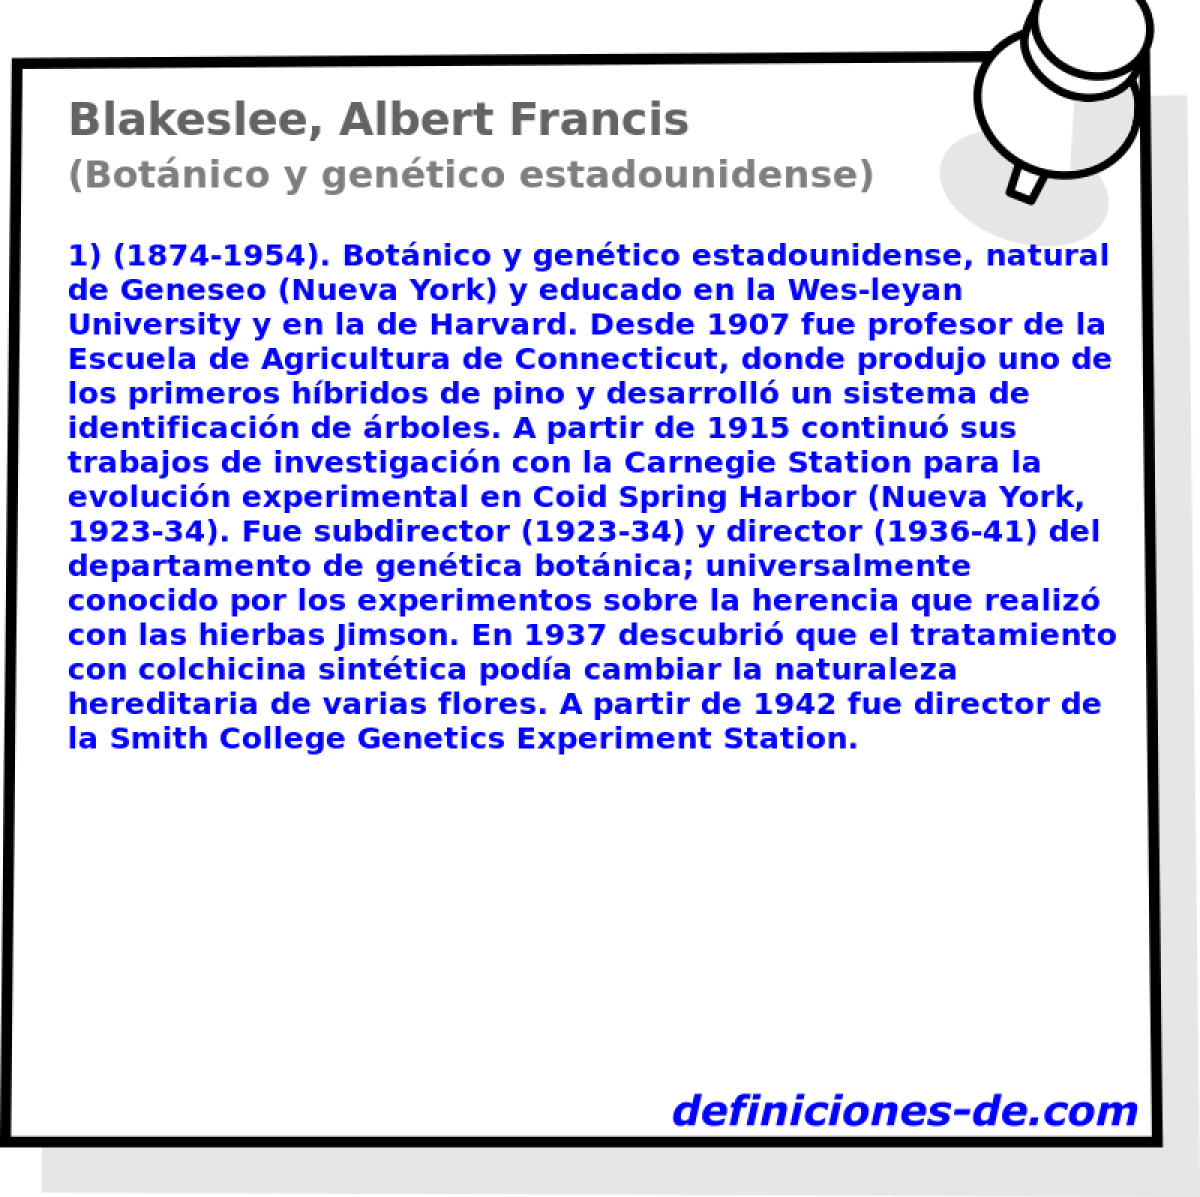 Blakeslee, Albert Francis (Botnico y gentico estadounidense)